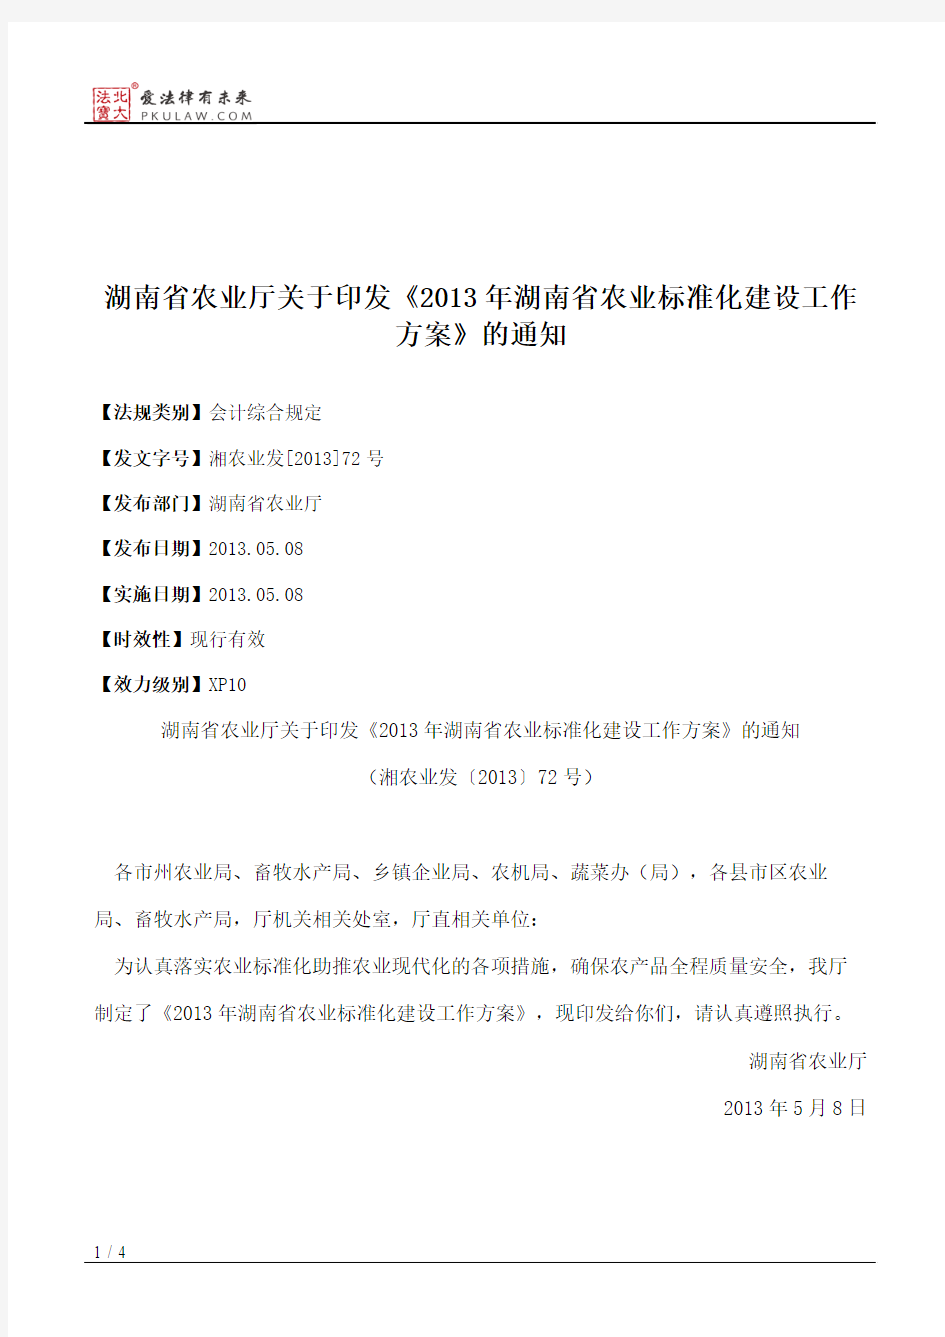 湖南省农业厅关于印发《2013年湖南省农业标准化建设工作方案》的通知